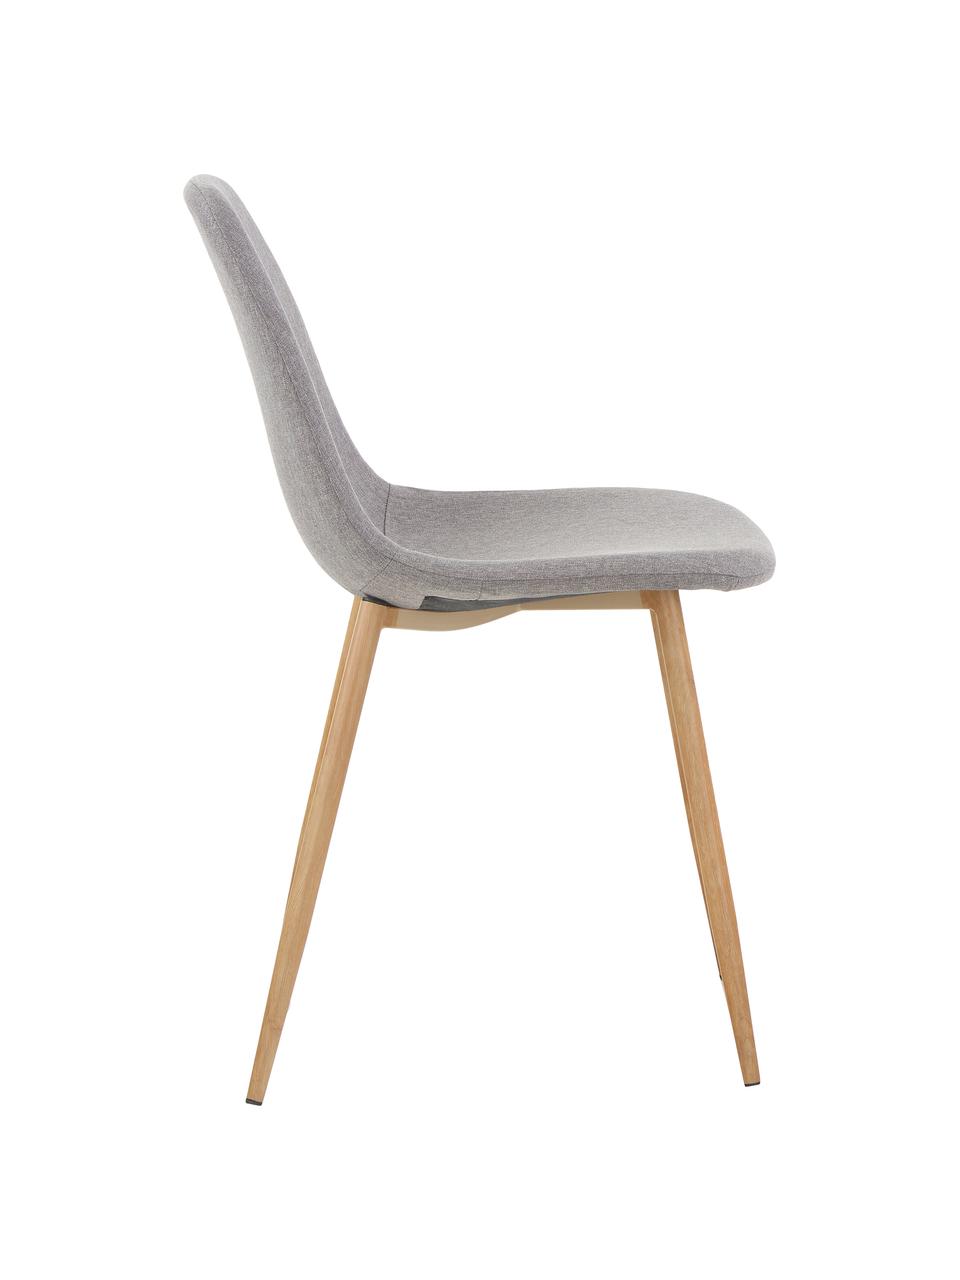 Gestoffeerde stoelen Wilma, 2 stuks, Poten: metaal met eiken decorati, Bekleding: polyester, Poten: eiken Bekleding: lichtgrijs, 45 x 84 cm